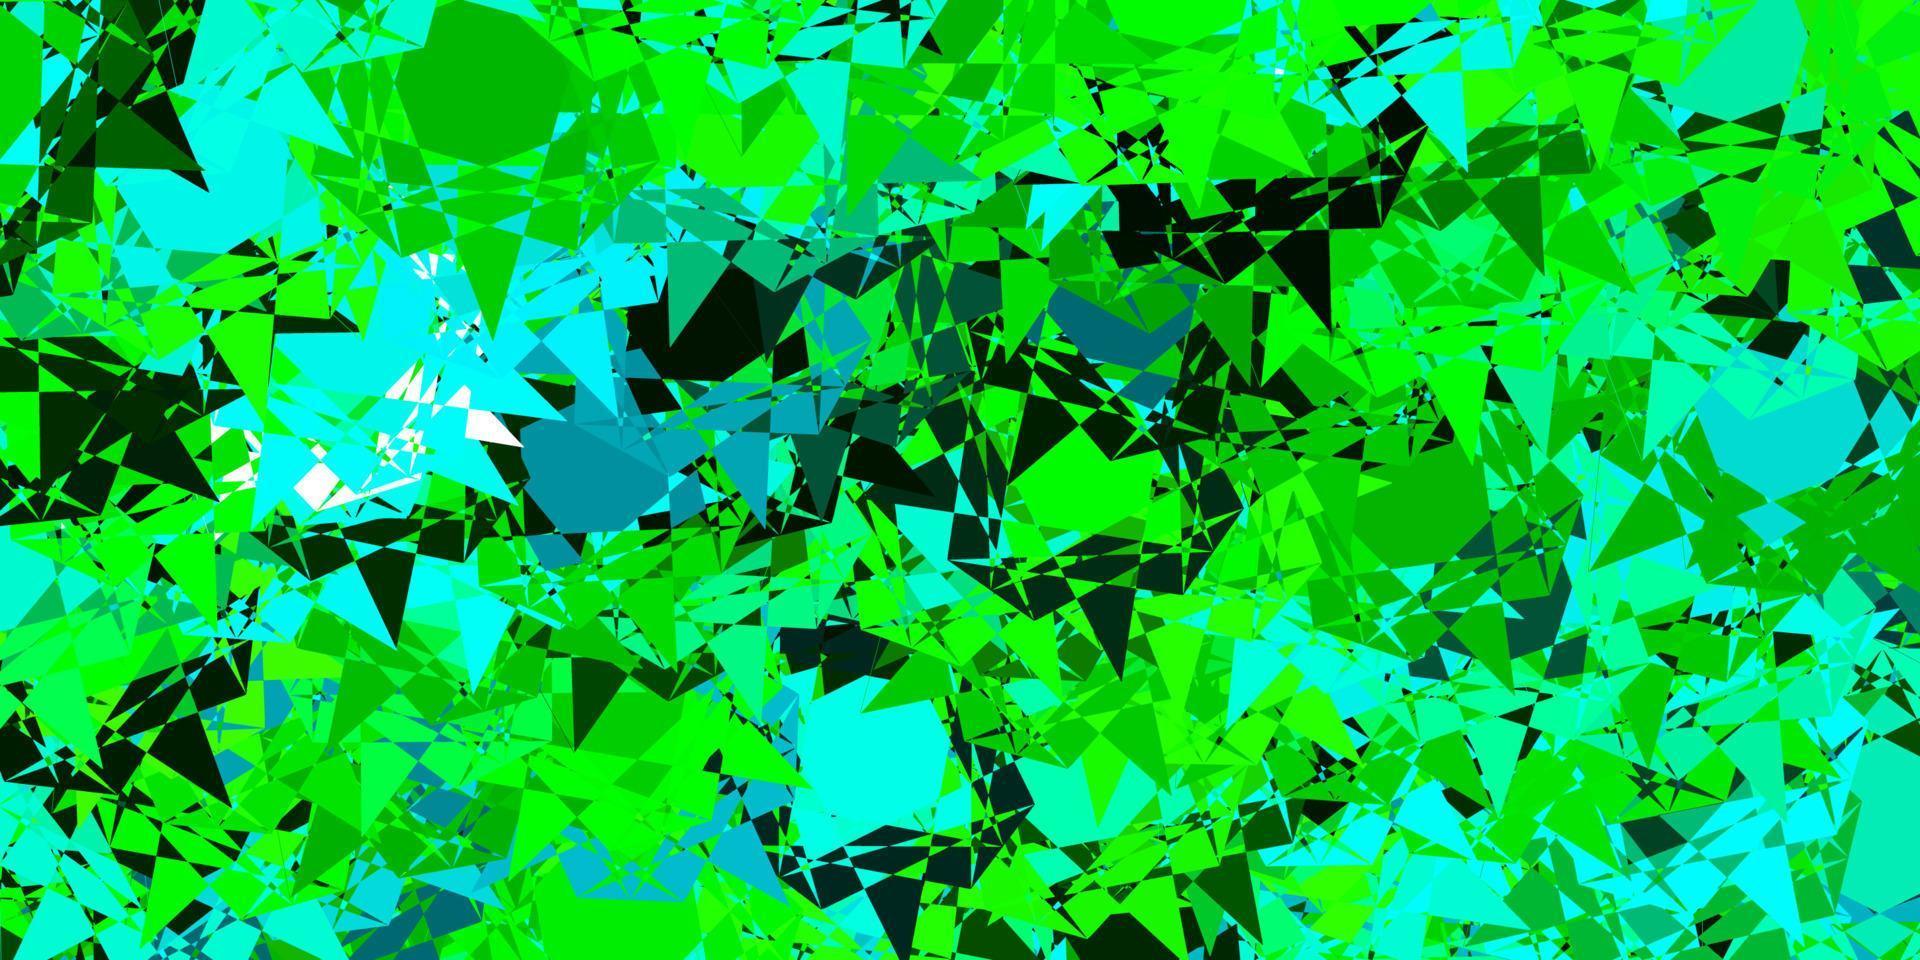 plantilla de vector azul claro, verde con formas triangulares.